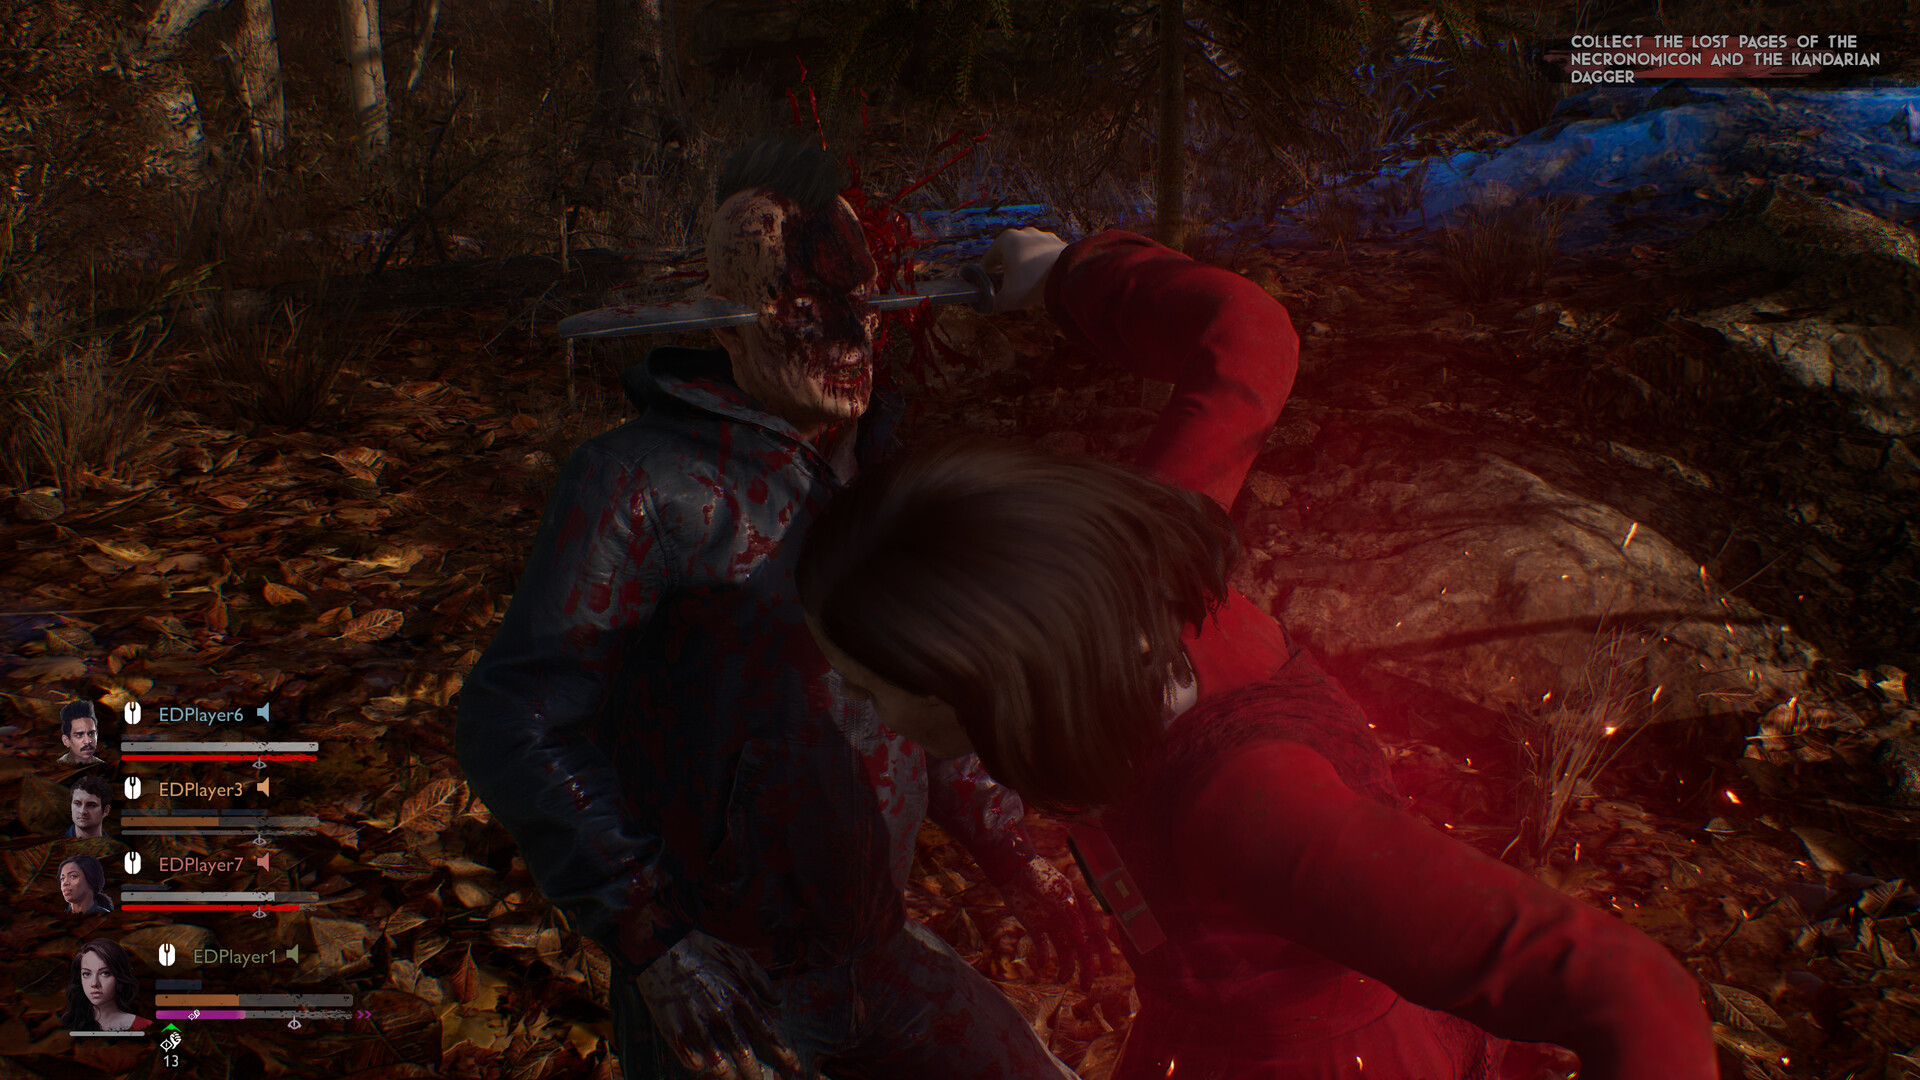 Evil Dead: The Game Gets New 2013 DLC Bundle - KeenGamer